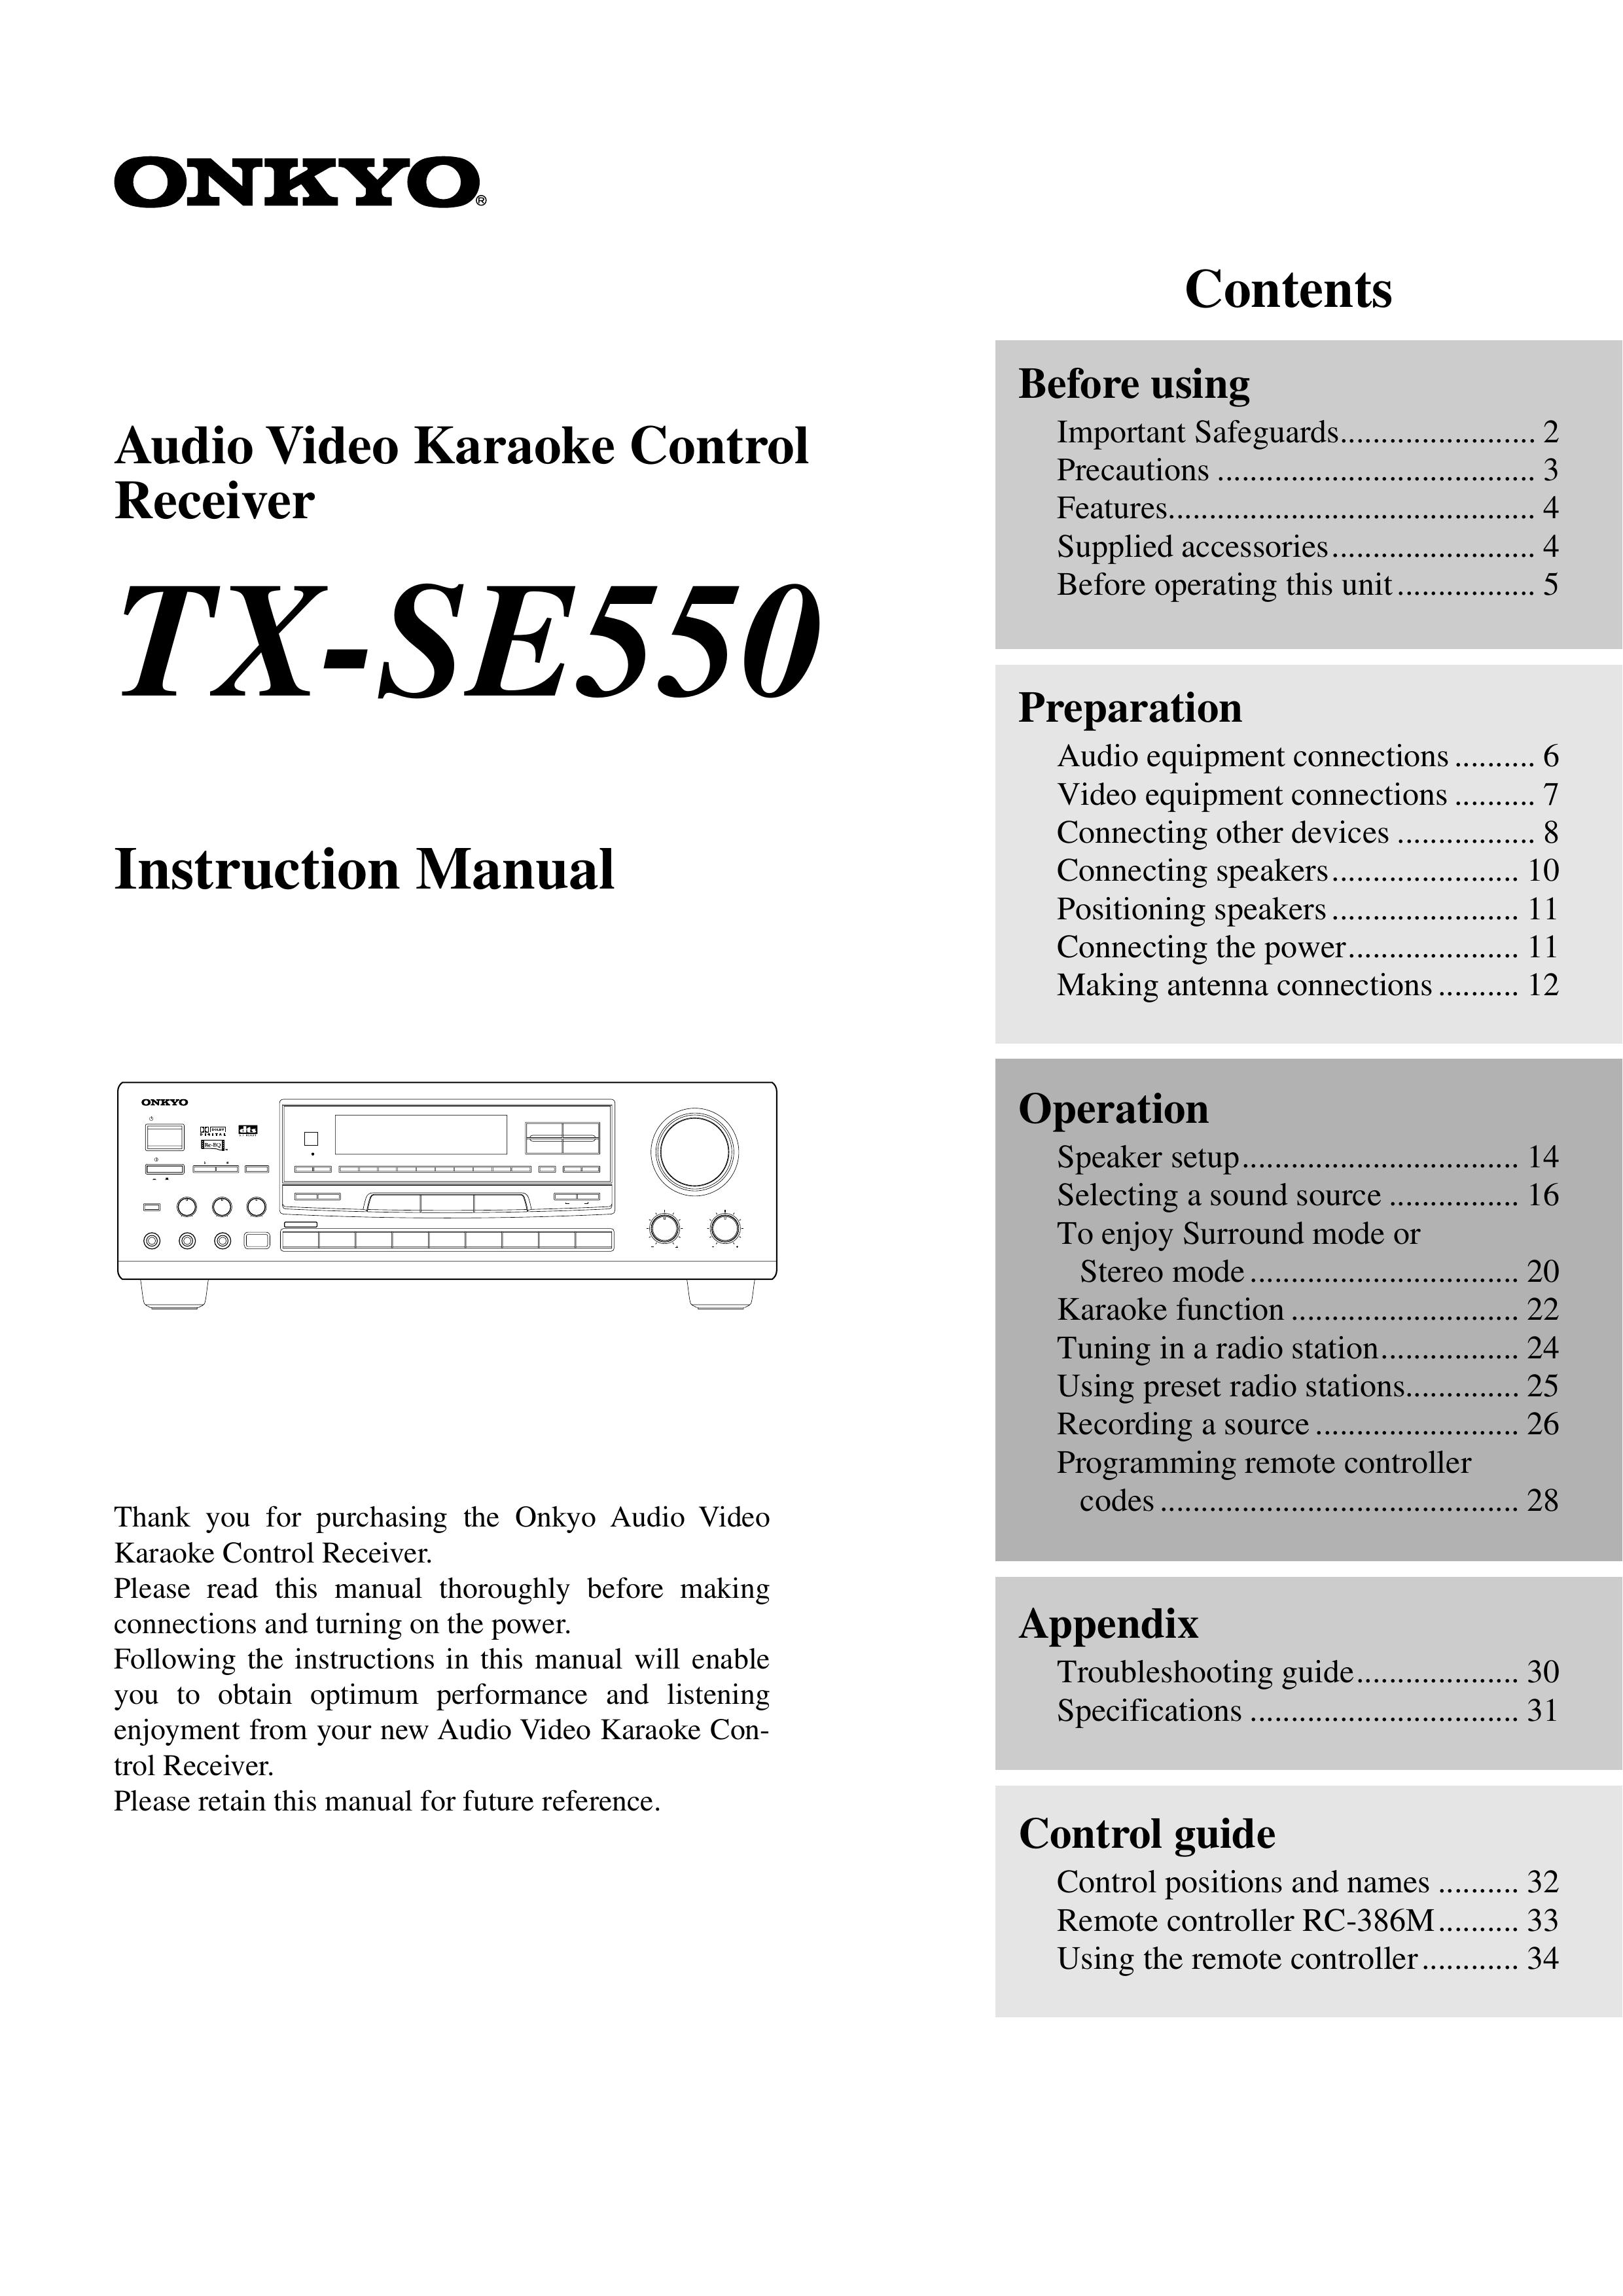 Onkyo TX-SE550 Karaoke Machine User Manual (Page 1)